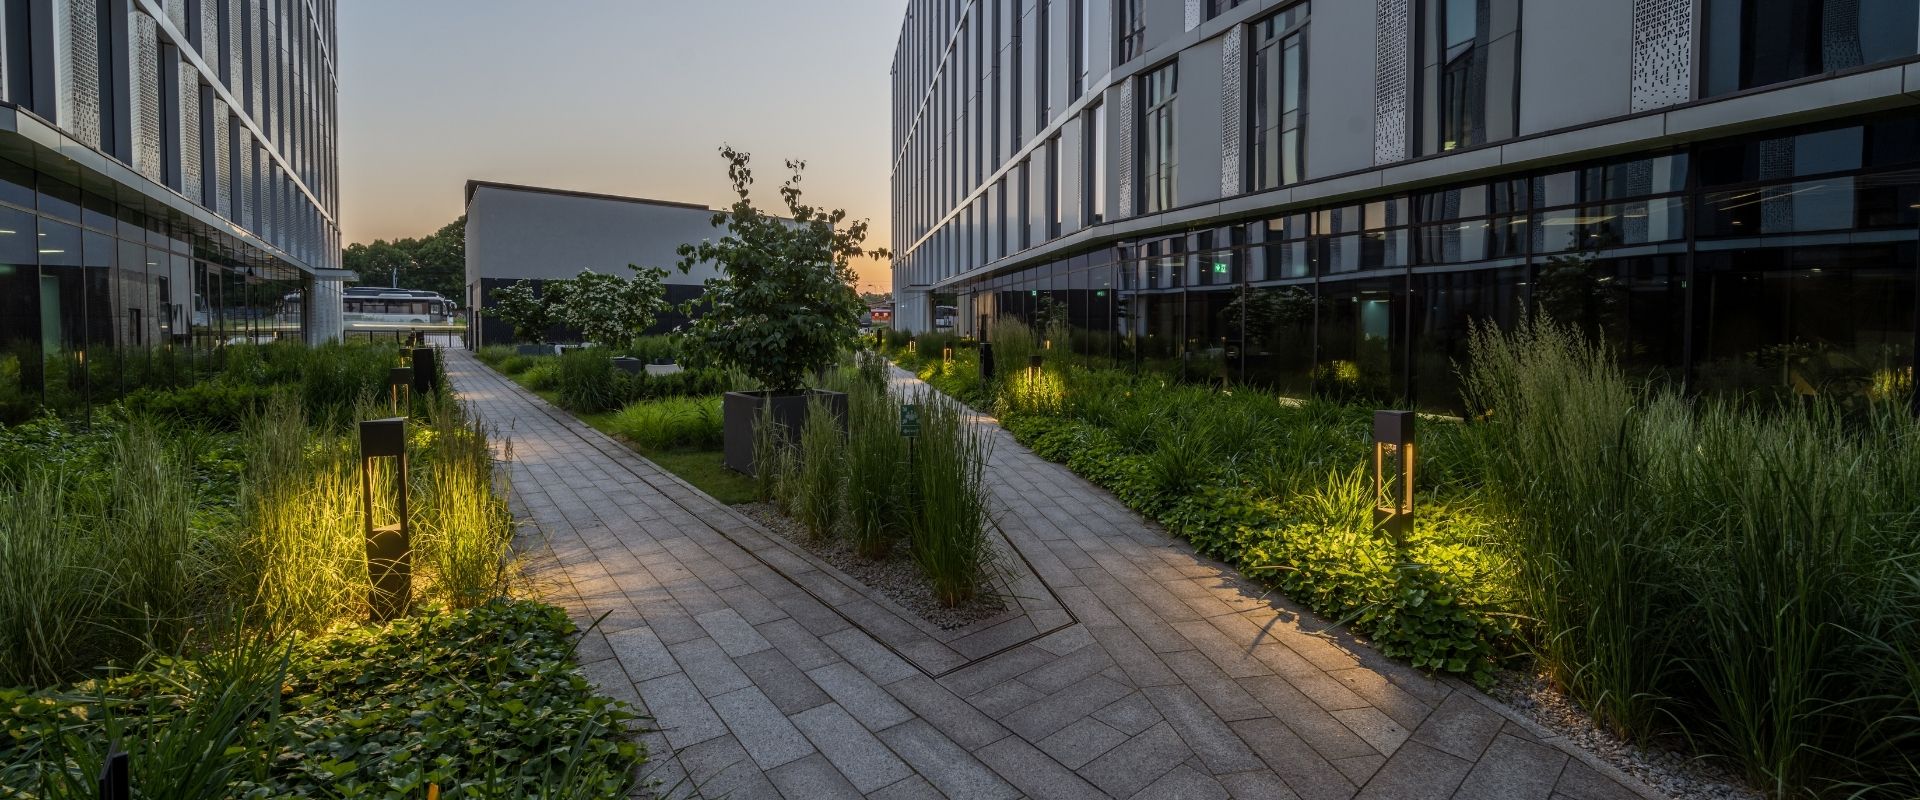 V.Offices, Krakow: Sustainability, Garden